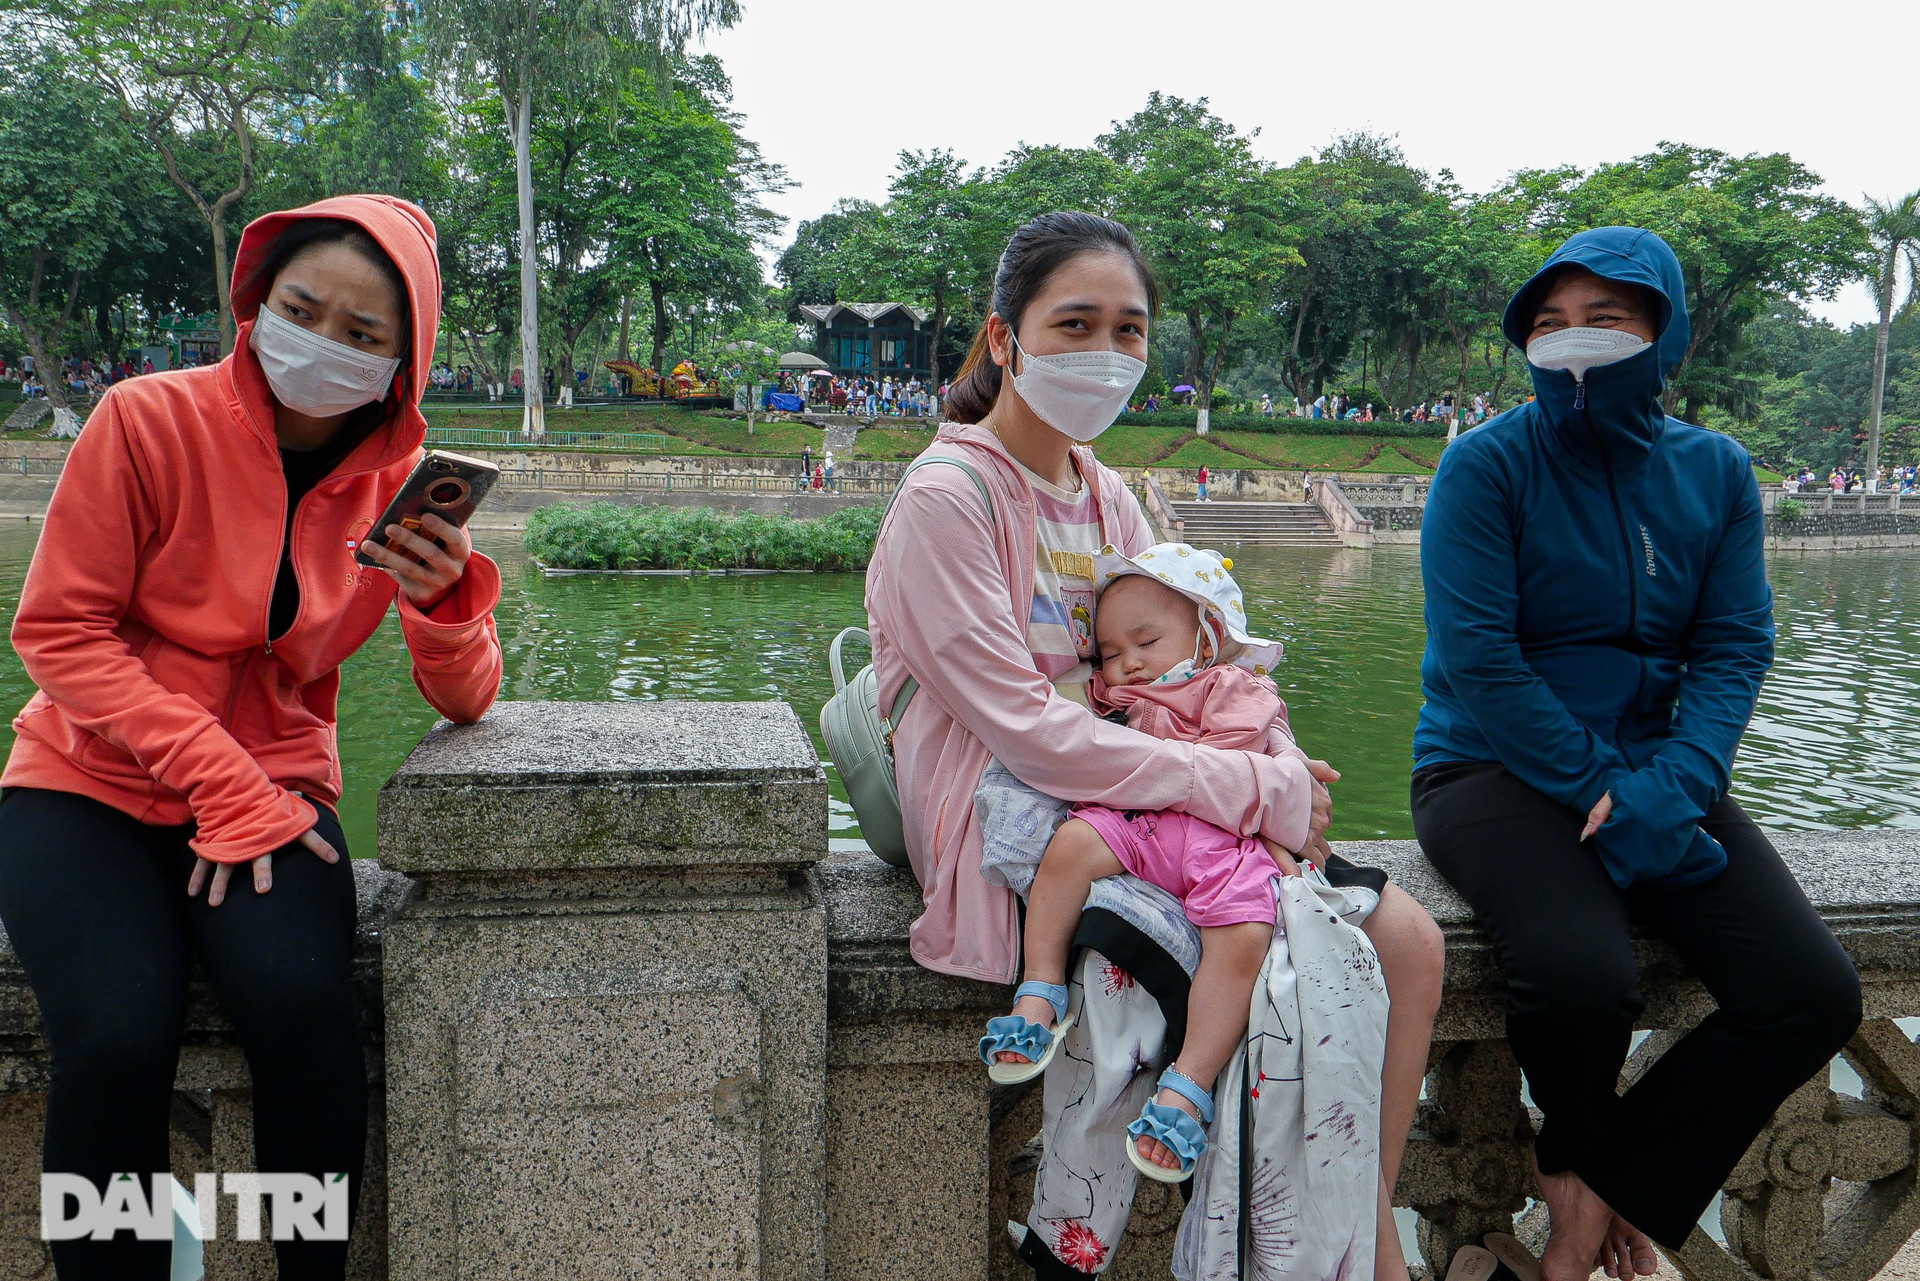  Choáng cảnh đông nghẹt thở, dòng người chen chúc trong công viên ở Hà Nội  - 9